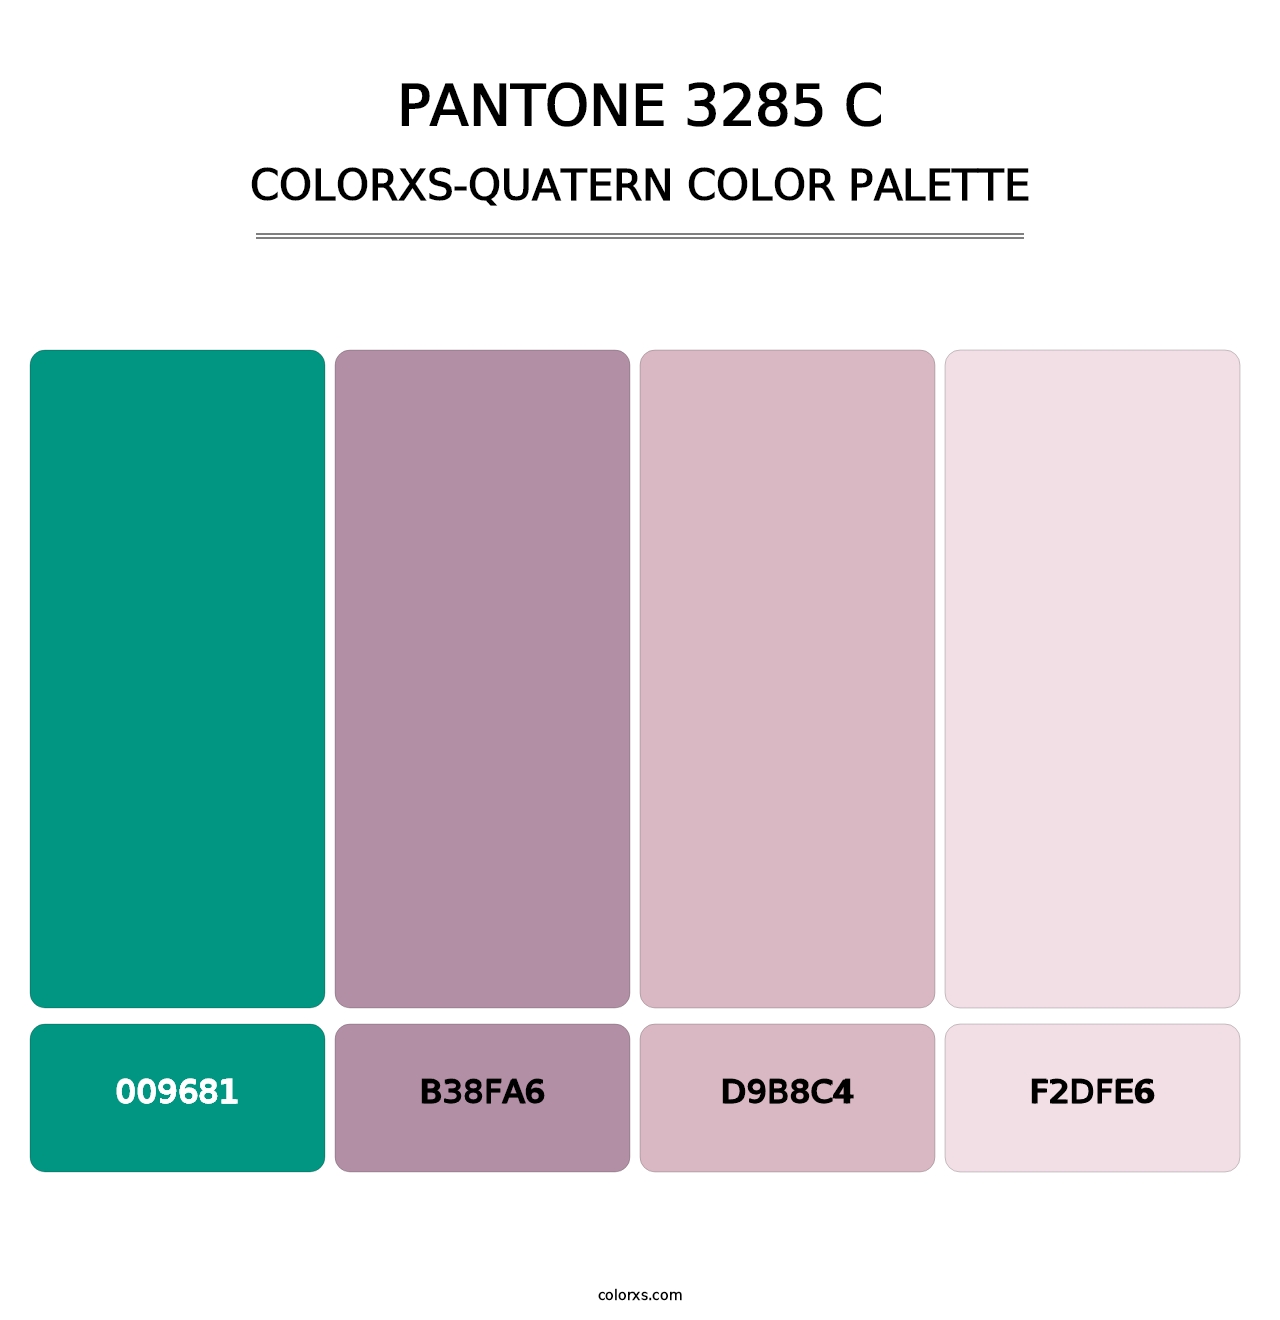 PANTONE 3285 C - Colorxs Quatern Palette